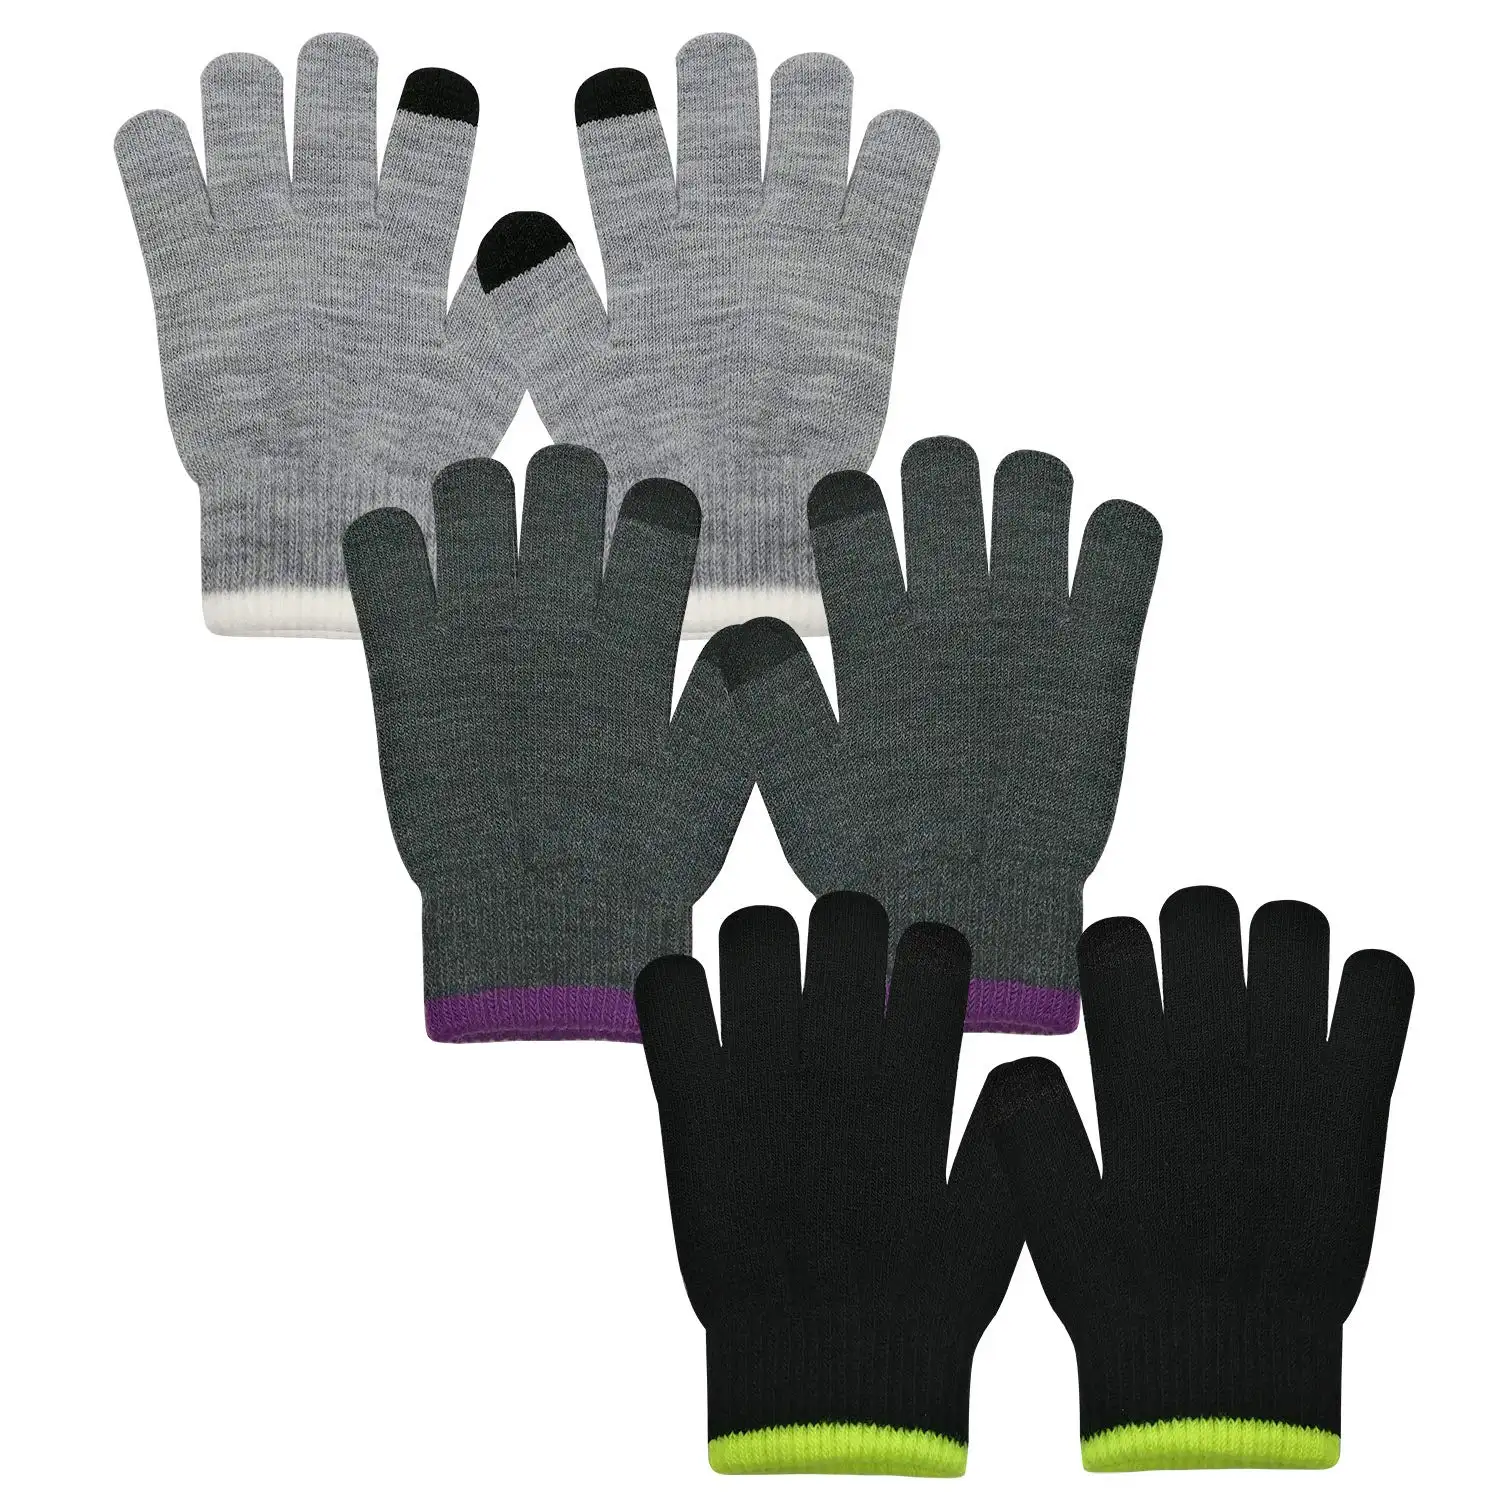 Высококачественные перчатки, волшебные теплые перчатки, удобные трикотажные перчатки с изображением белки из мультфильма